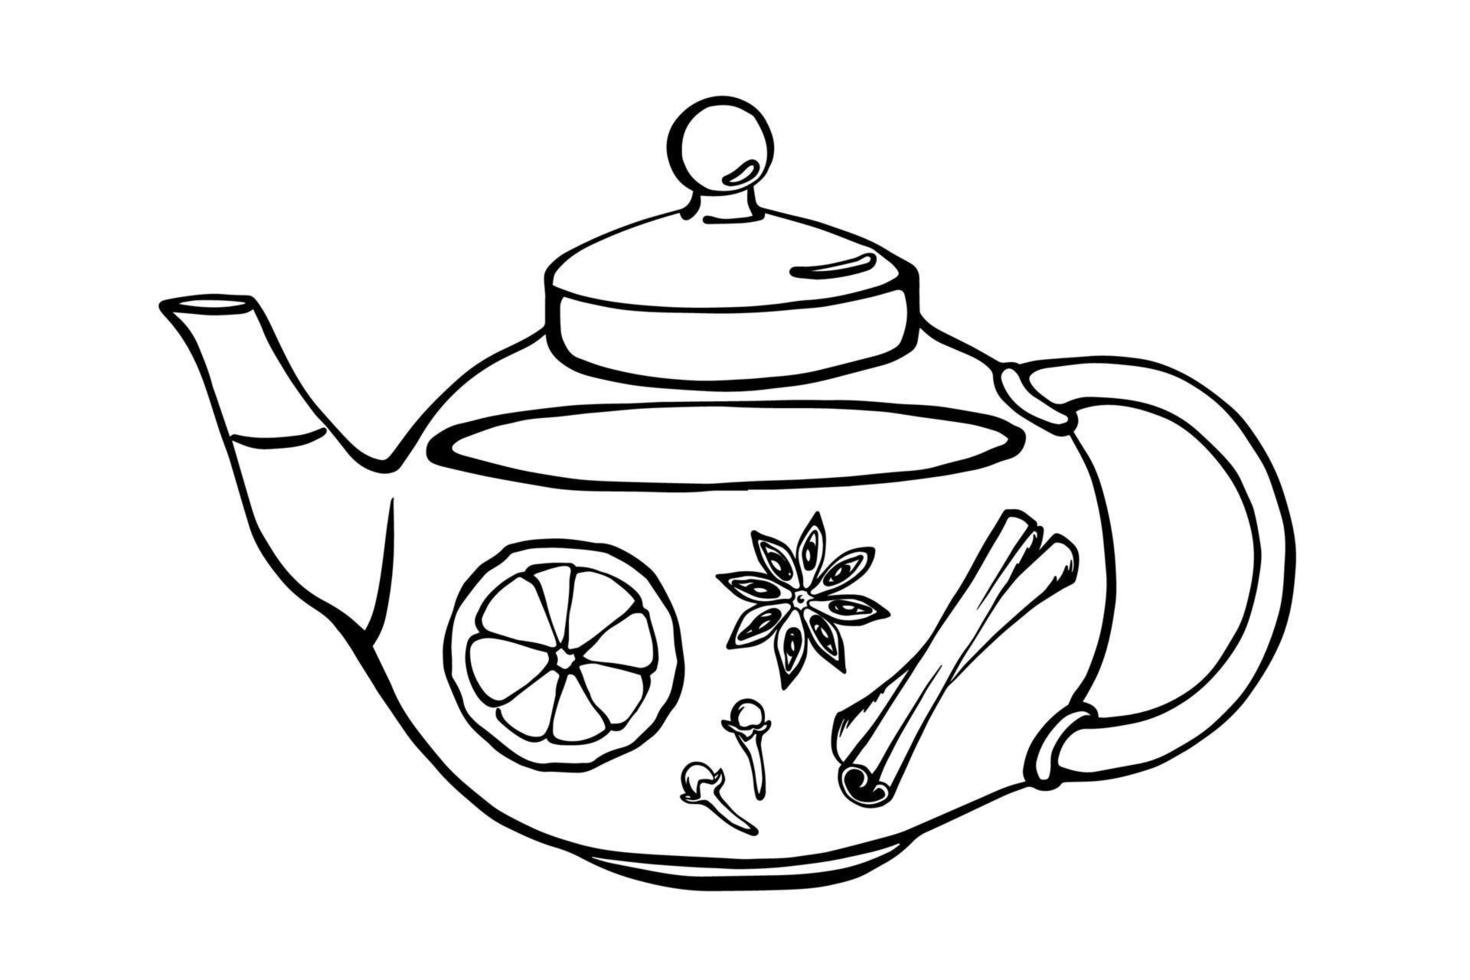 bule de chá com ingredientes de chá dentro. fatia de laranja, canela, cravo, anis. desenho de receita de chá de rabiscos vetoriais desenhados à mão. vetor